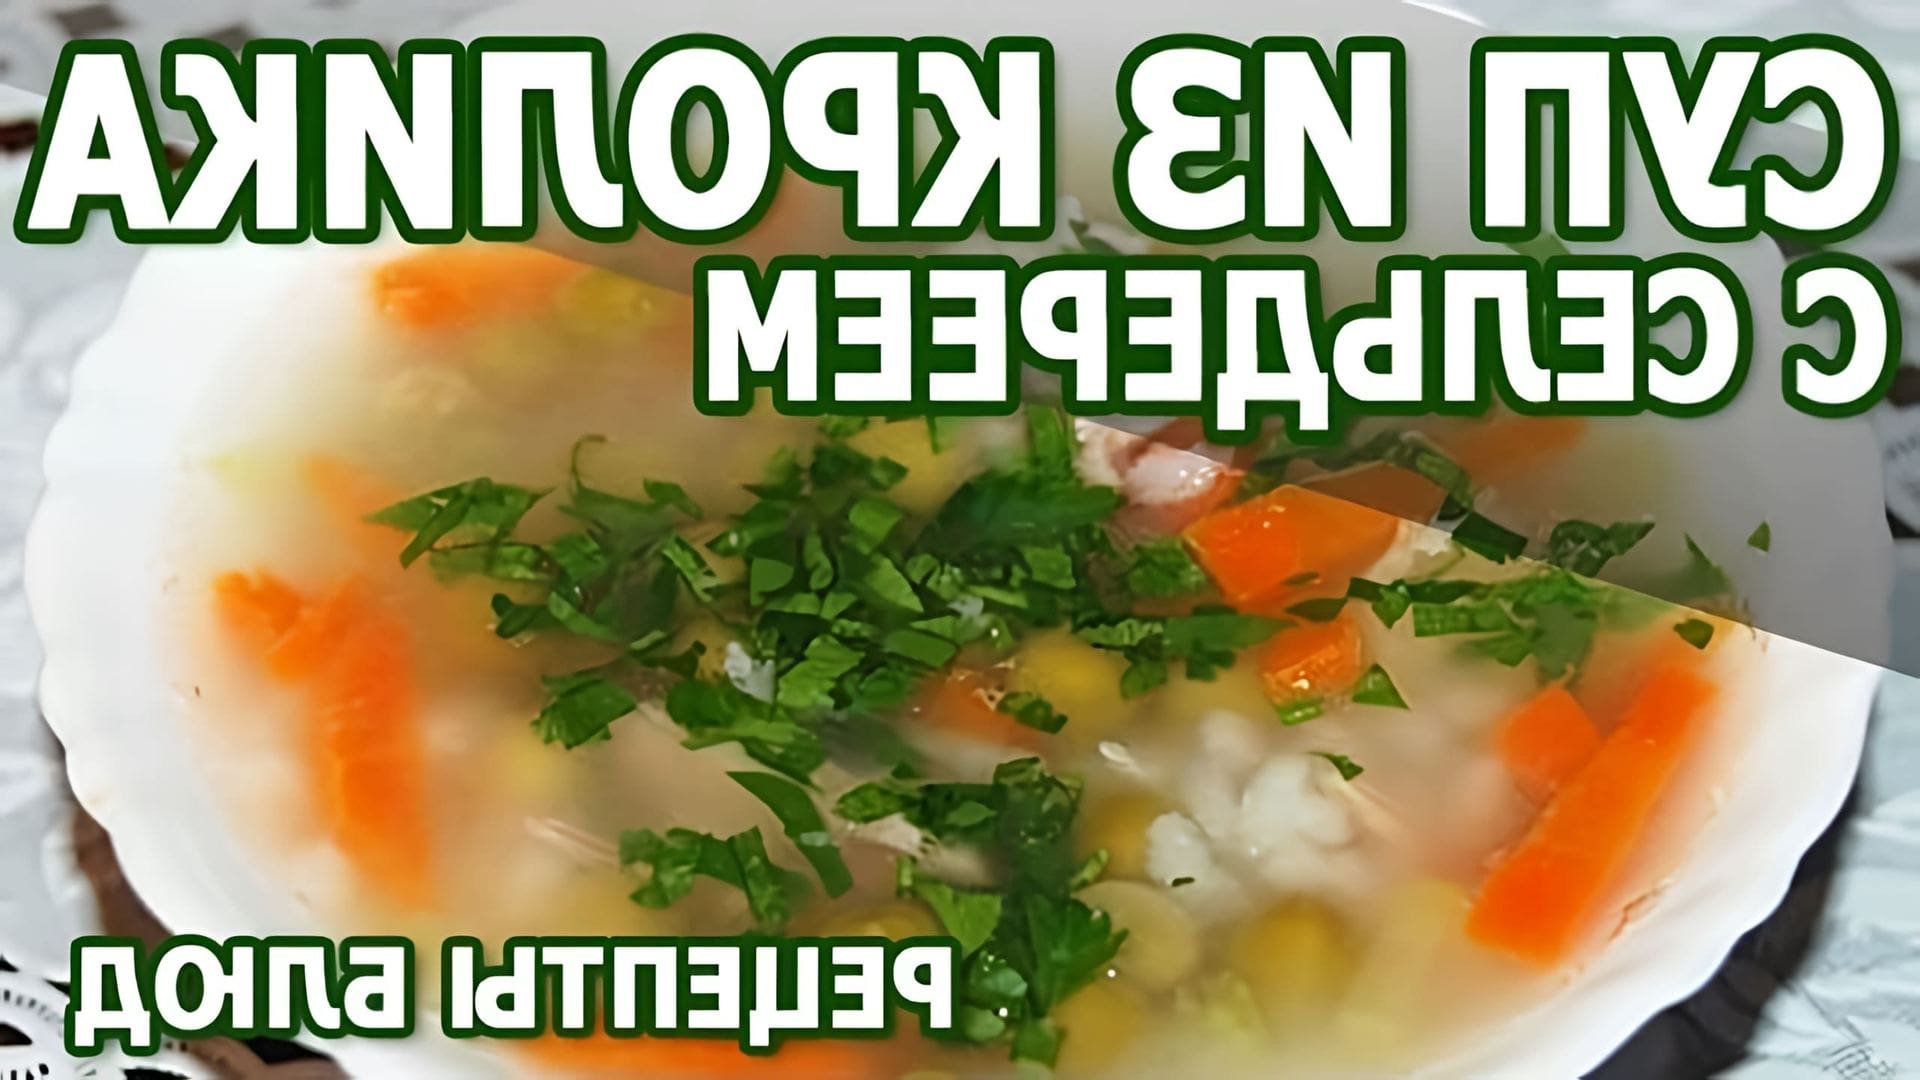 В данном видео рассказывается о рецепте приготовления супа из кролика с сельдереем